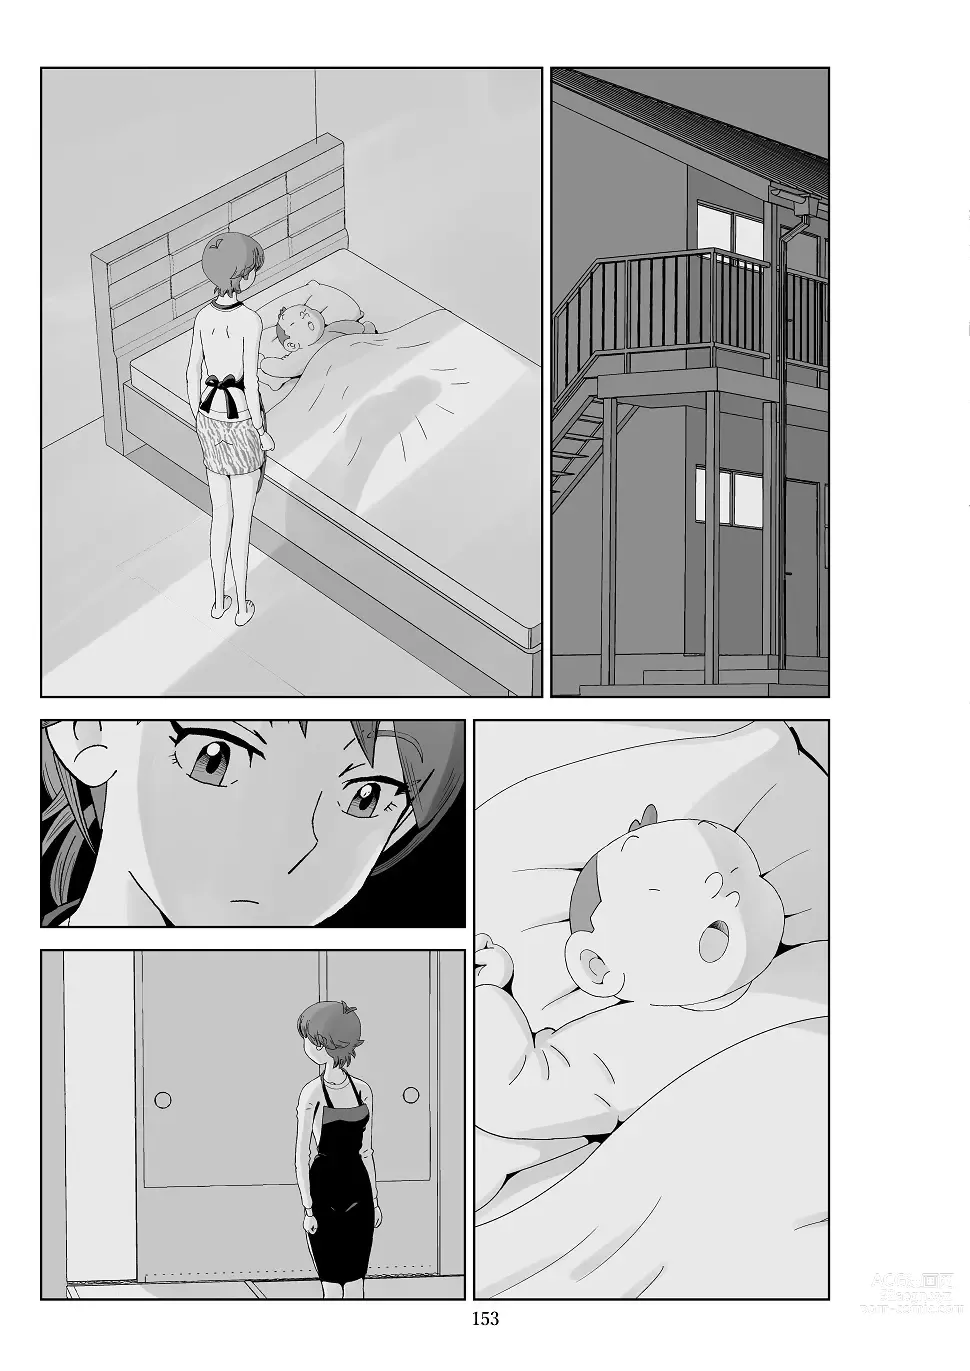 Page 155 of doujinshi Futoshi 3